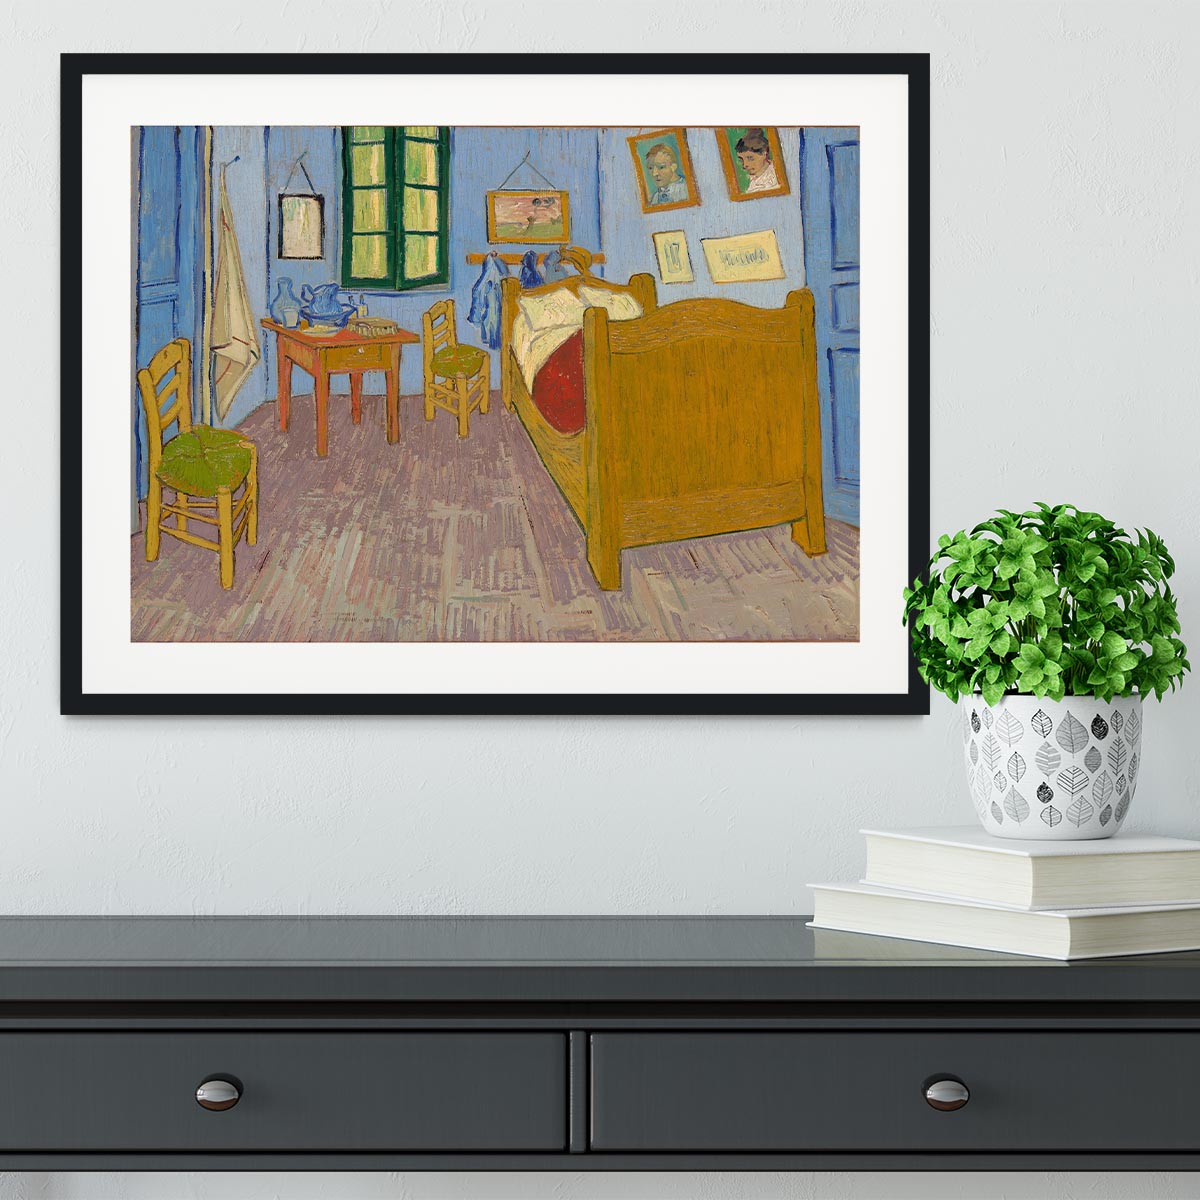 Vincents bedroom at Arles Framed Print - Canvas Art Rocks - 1